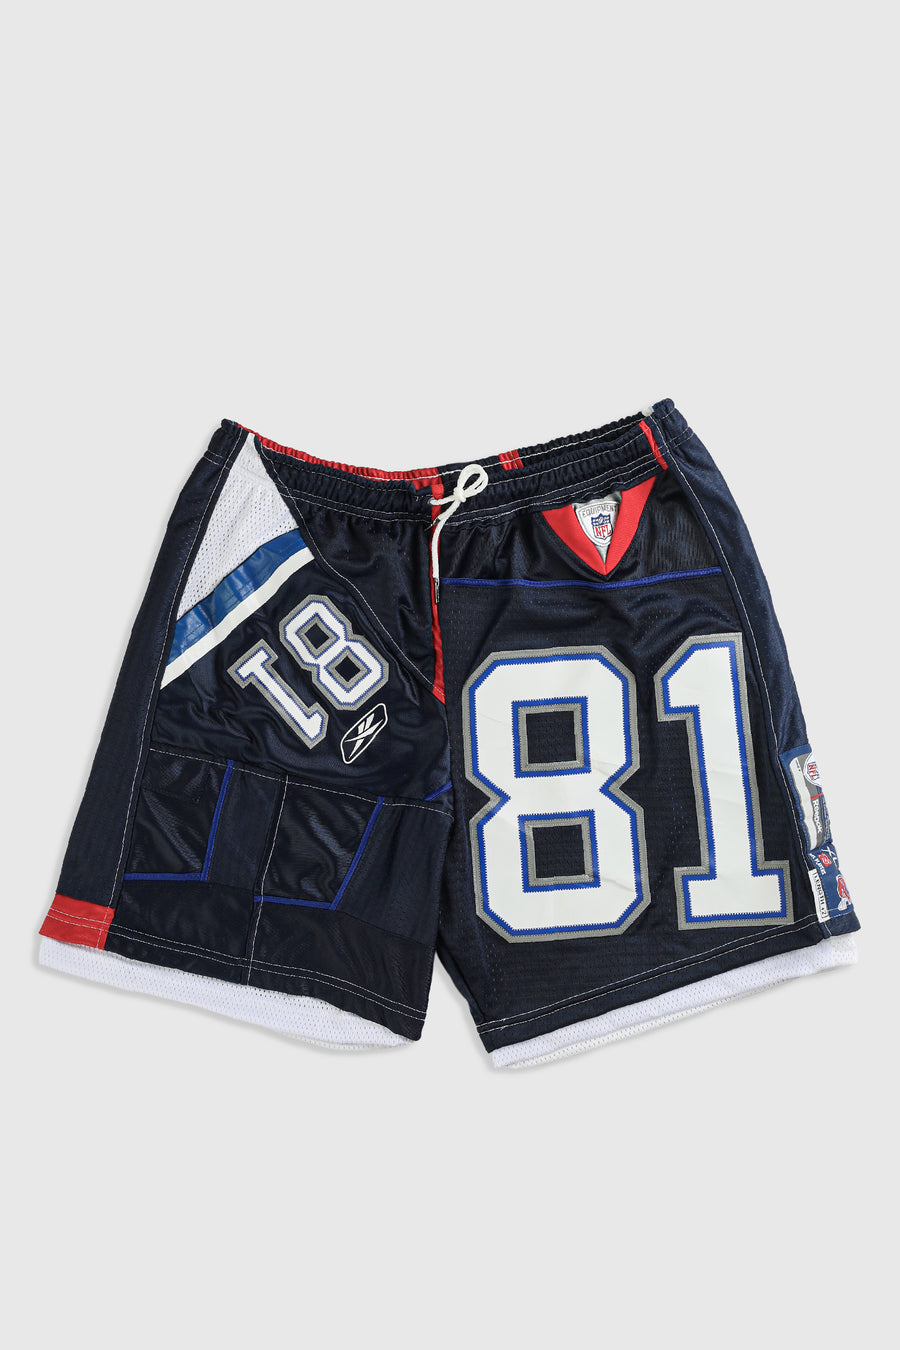 Unisex Rework Bills NFL Jersey Shorts - XL